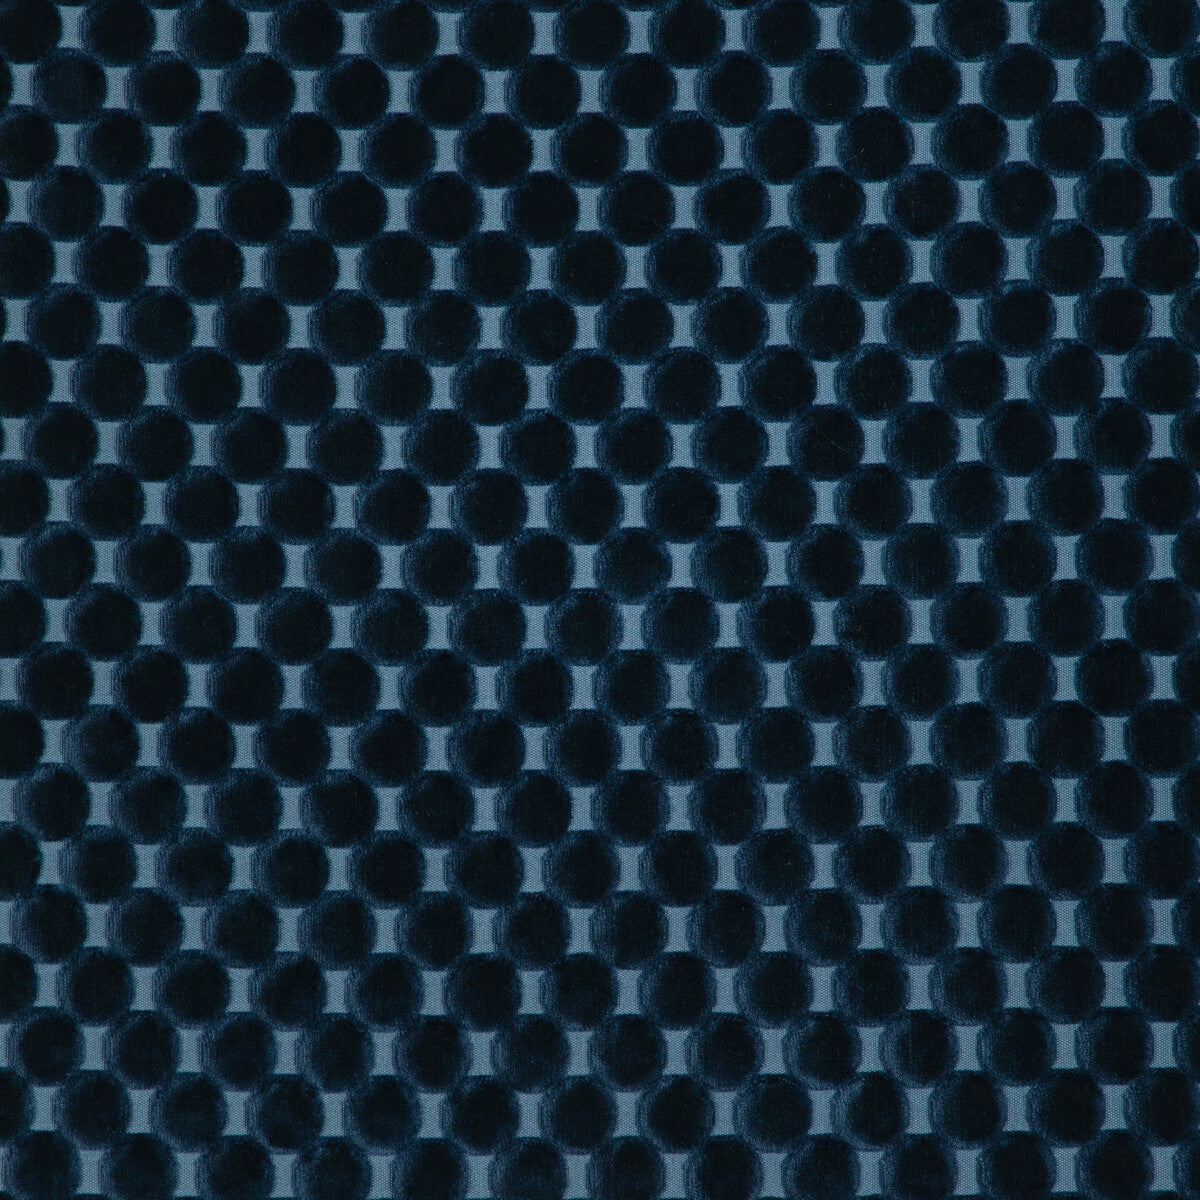 Kravet Design fabric in 37165-50 color - pattern 37165.50.0 - by Kravet Design